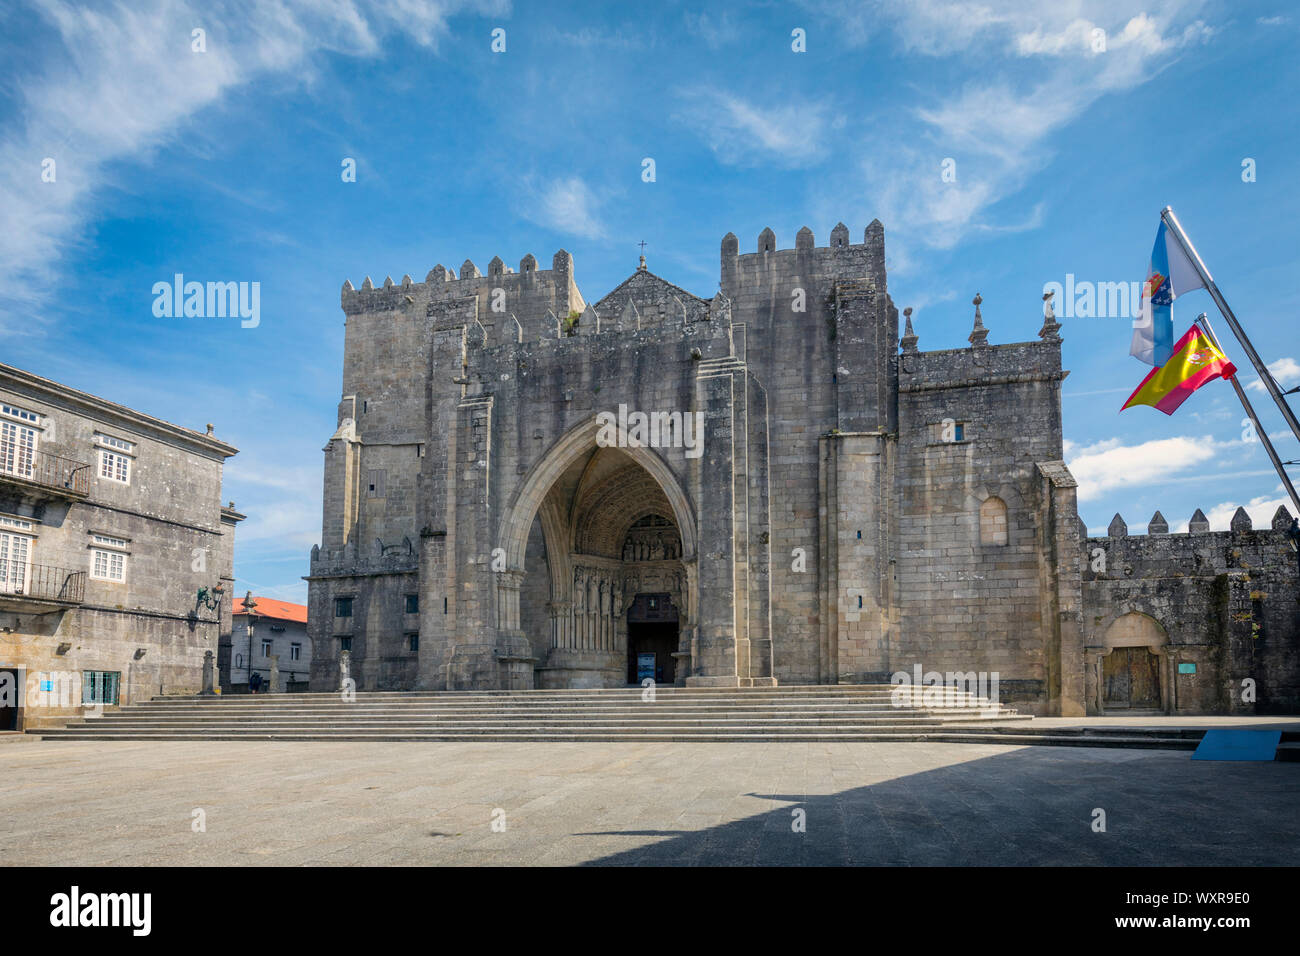 La romanico-gotica Catedral de Santa Maria, costruita durante il XII-XIII secolo. La Cattedrale di Santa Maria. Tui, Pontevedra, Galizia, Spagna Foto Stock